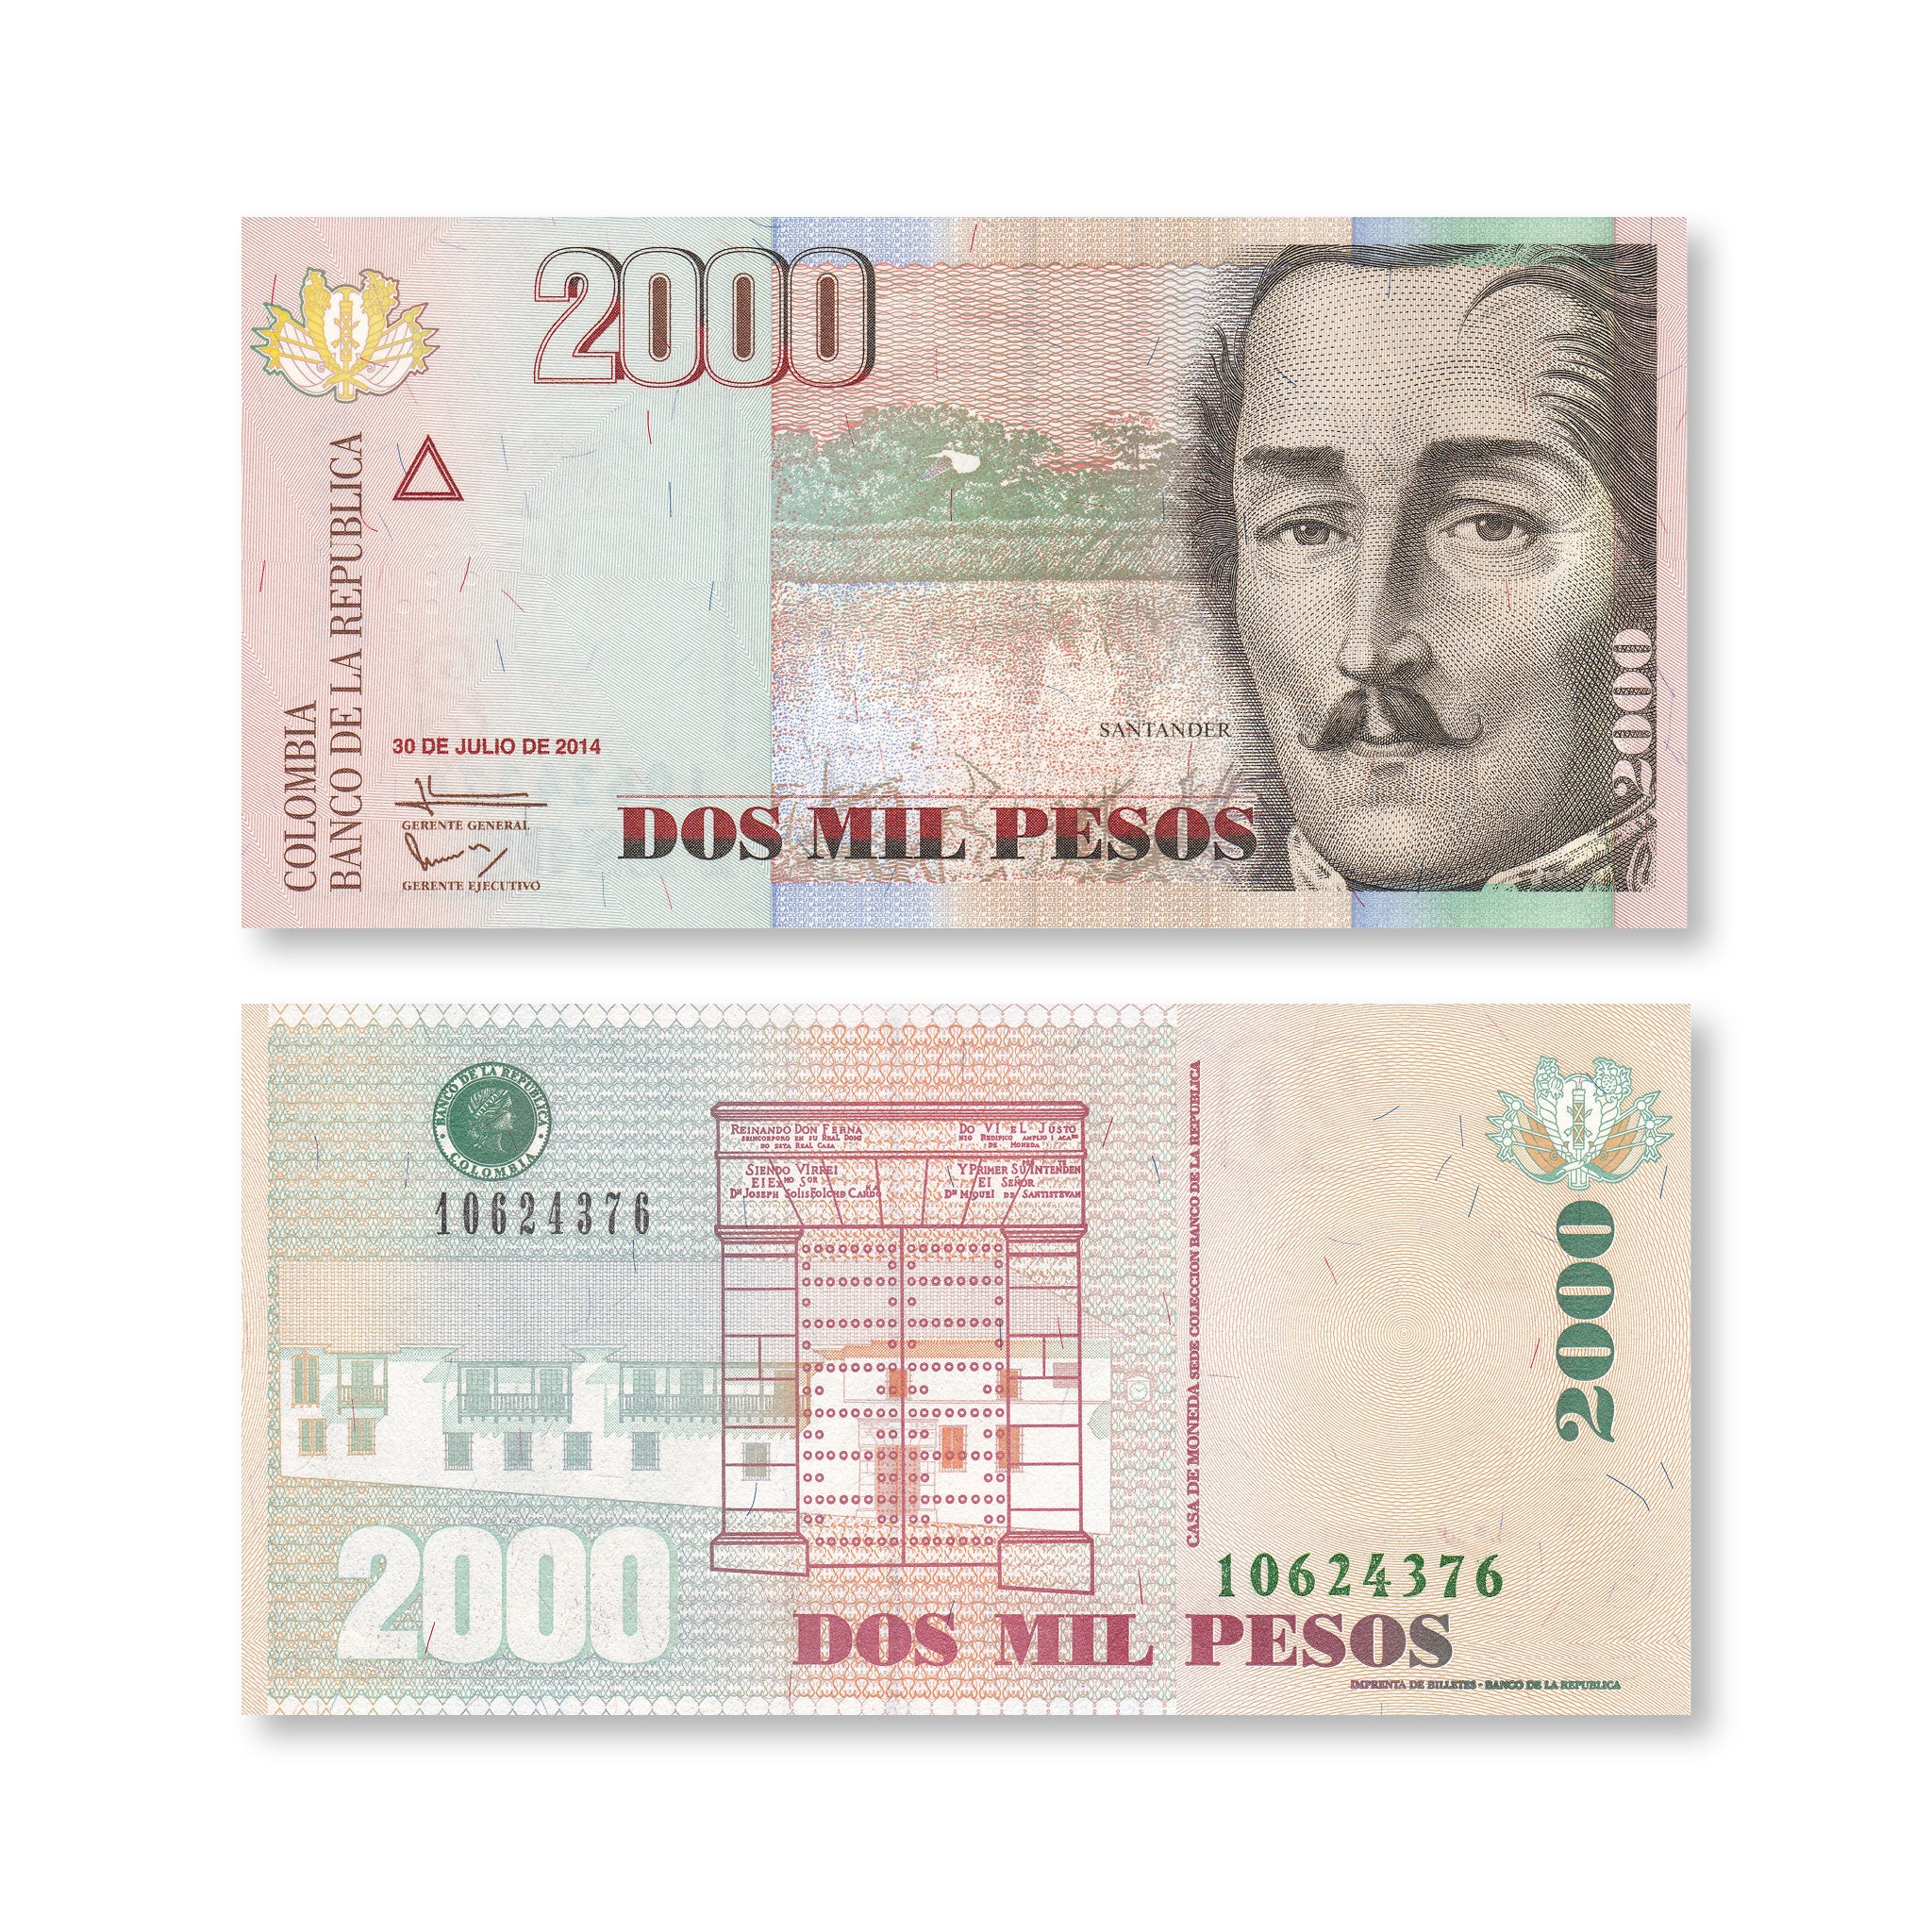 Colombia 2000 Pesos, 2014, B988y, P457y, UNC - Robert's World Money - World Banknotes